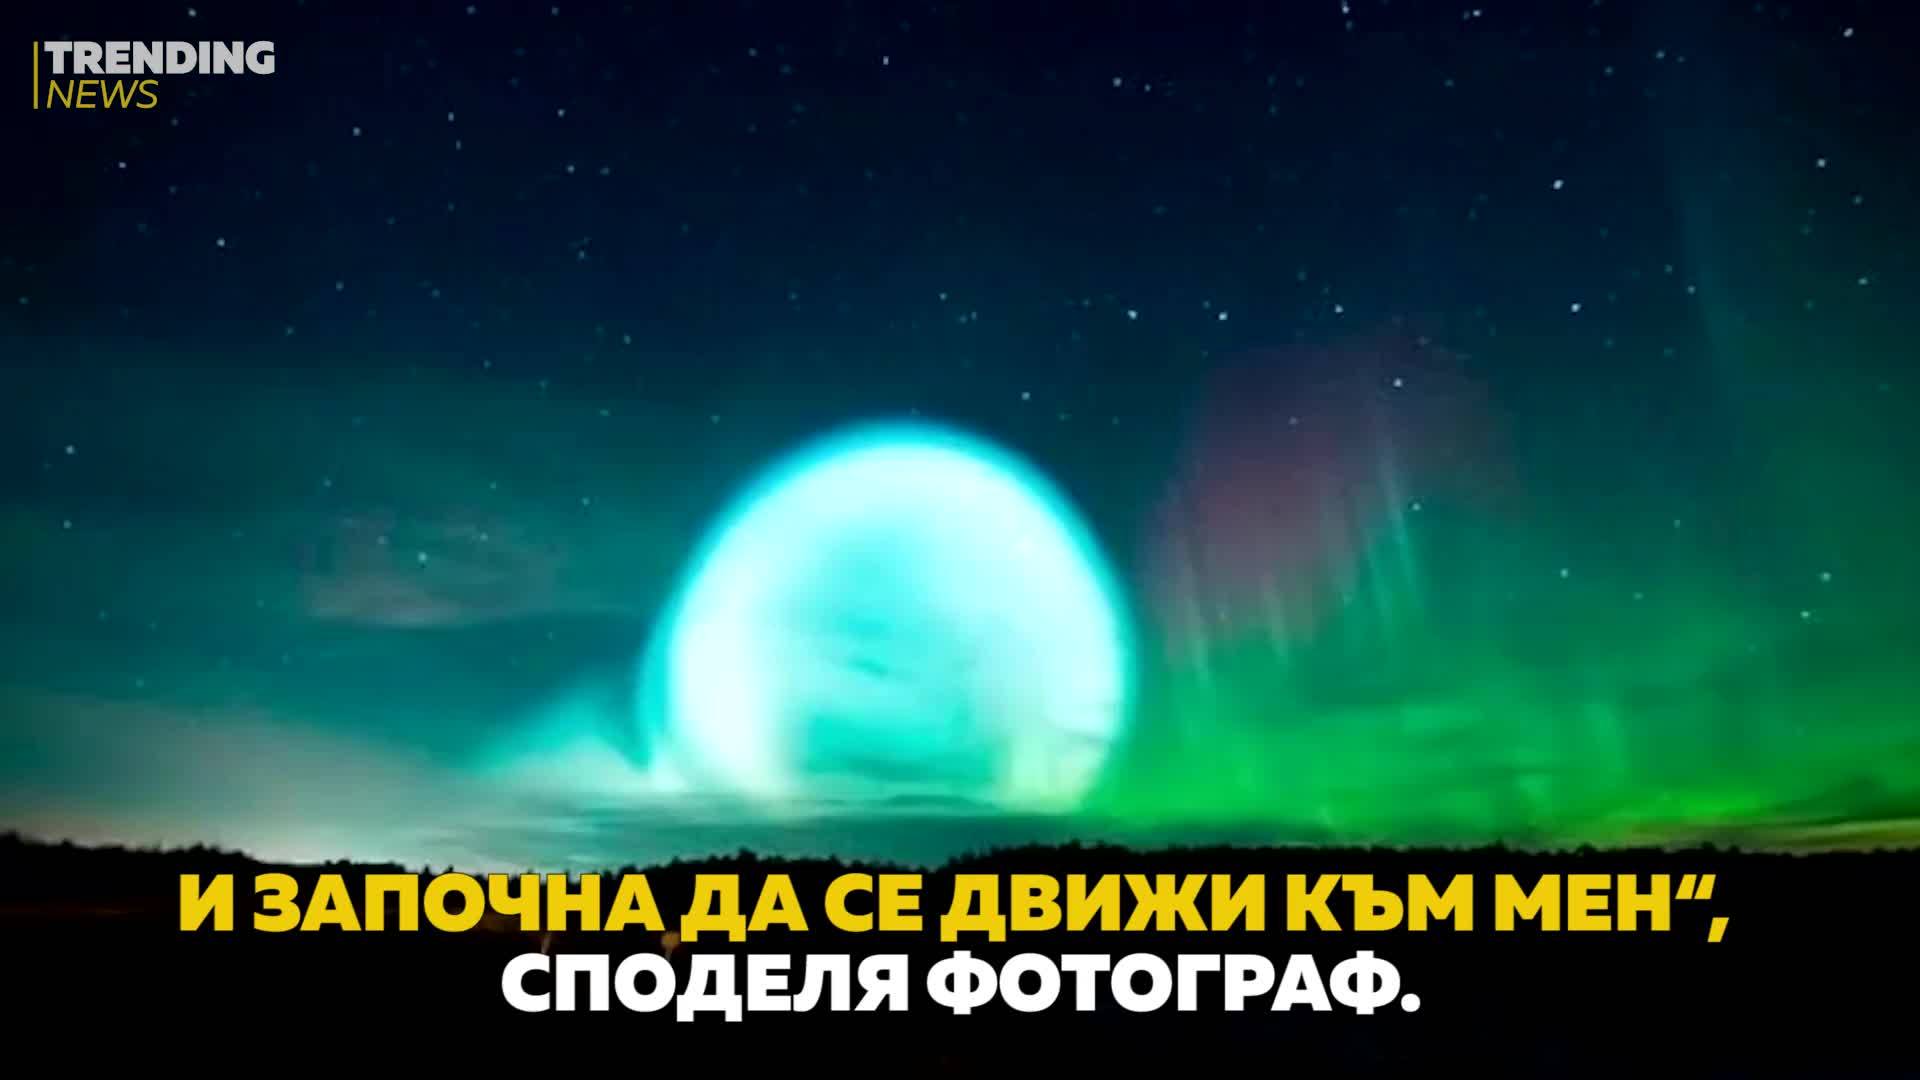 Мистериозни светещи орбити се появиха в небето над Сибир